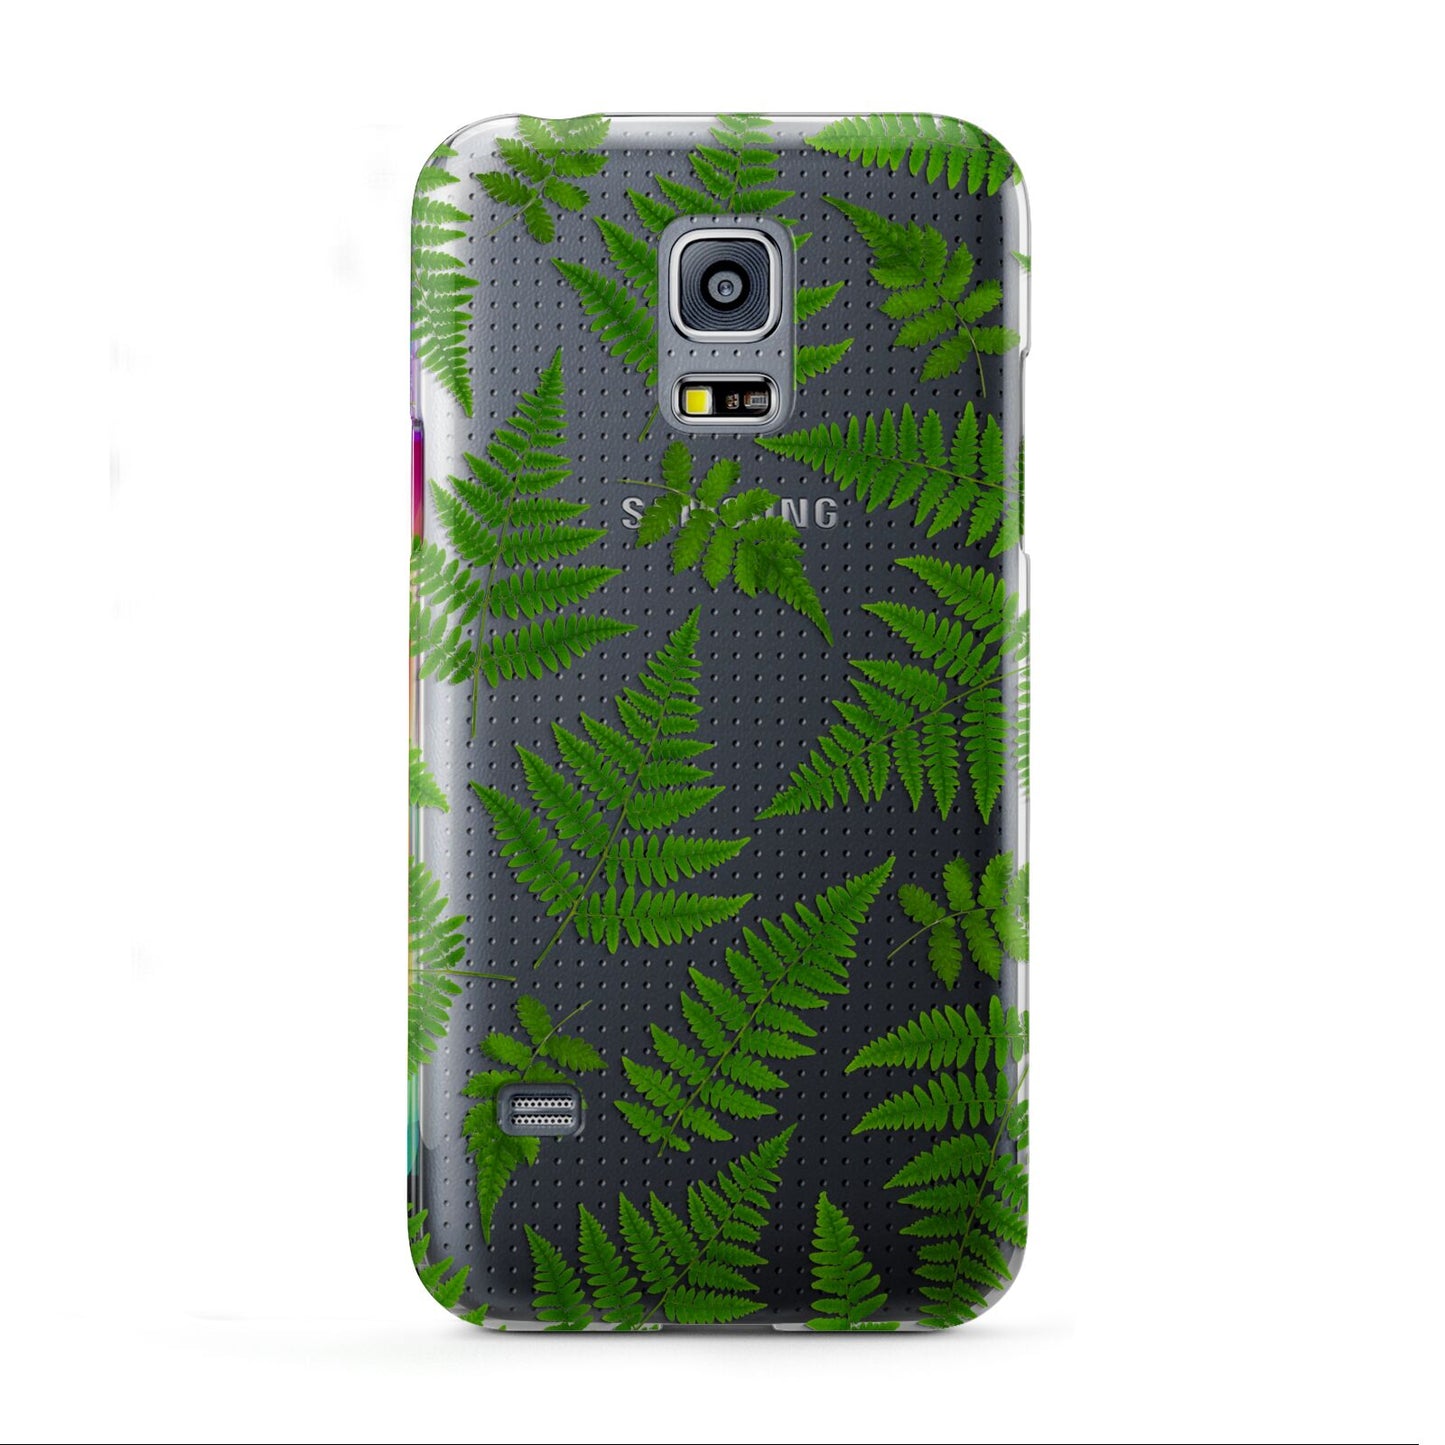 Fern Leaf Samsung Galaxy S5 Mini Case